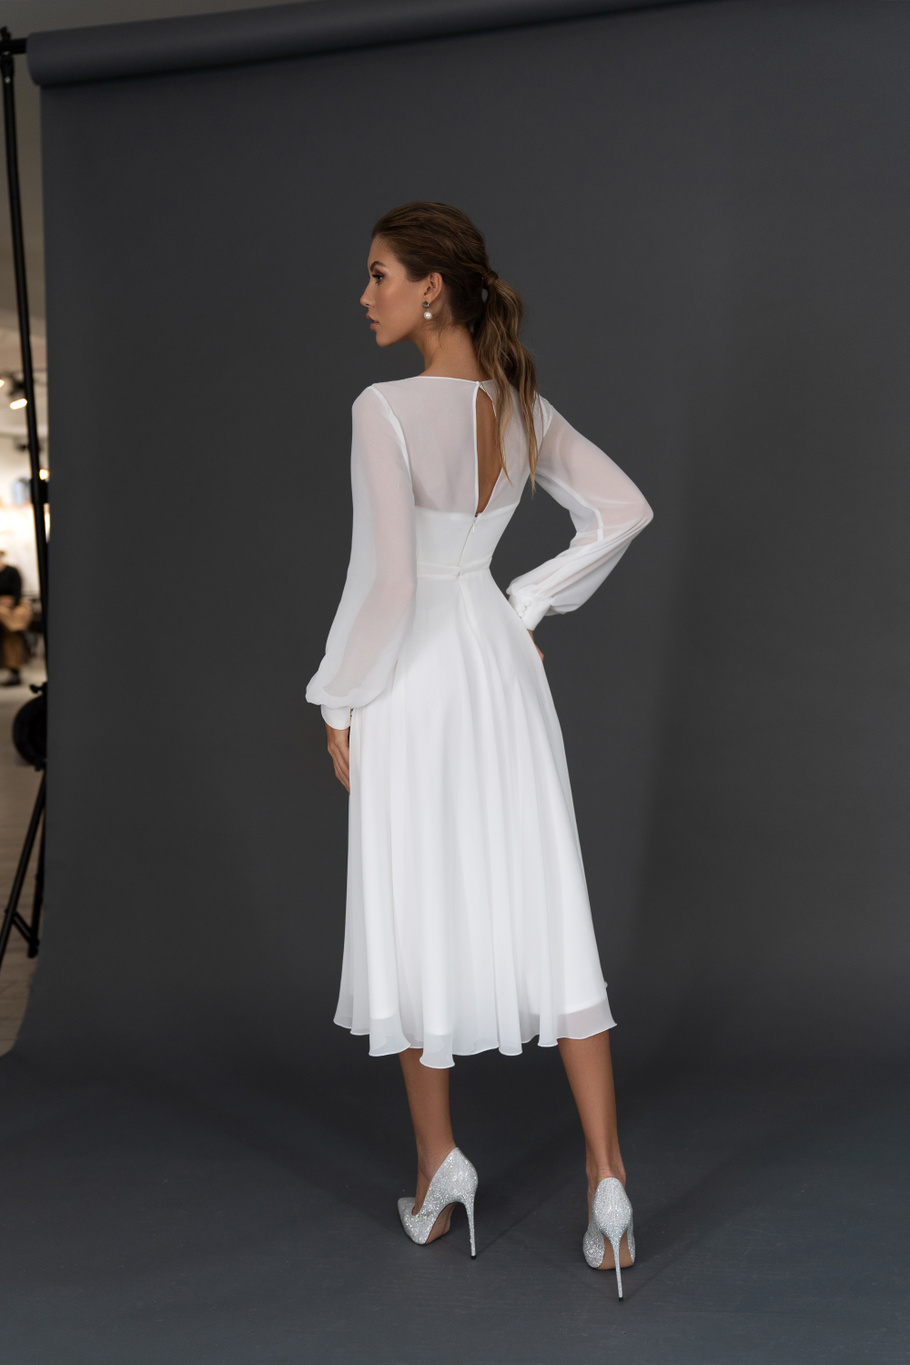 Свадебное платье «Осфадэль миди» Марта — купить в Ростове платье Осфадэль из коллекции 2021 года